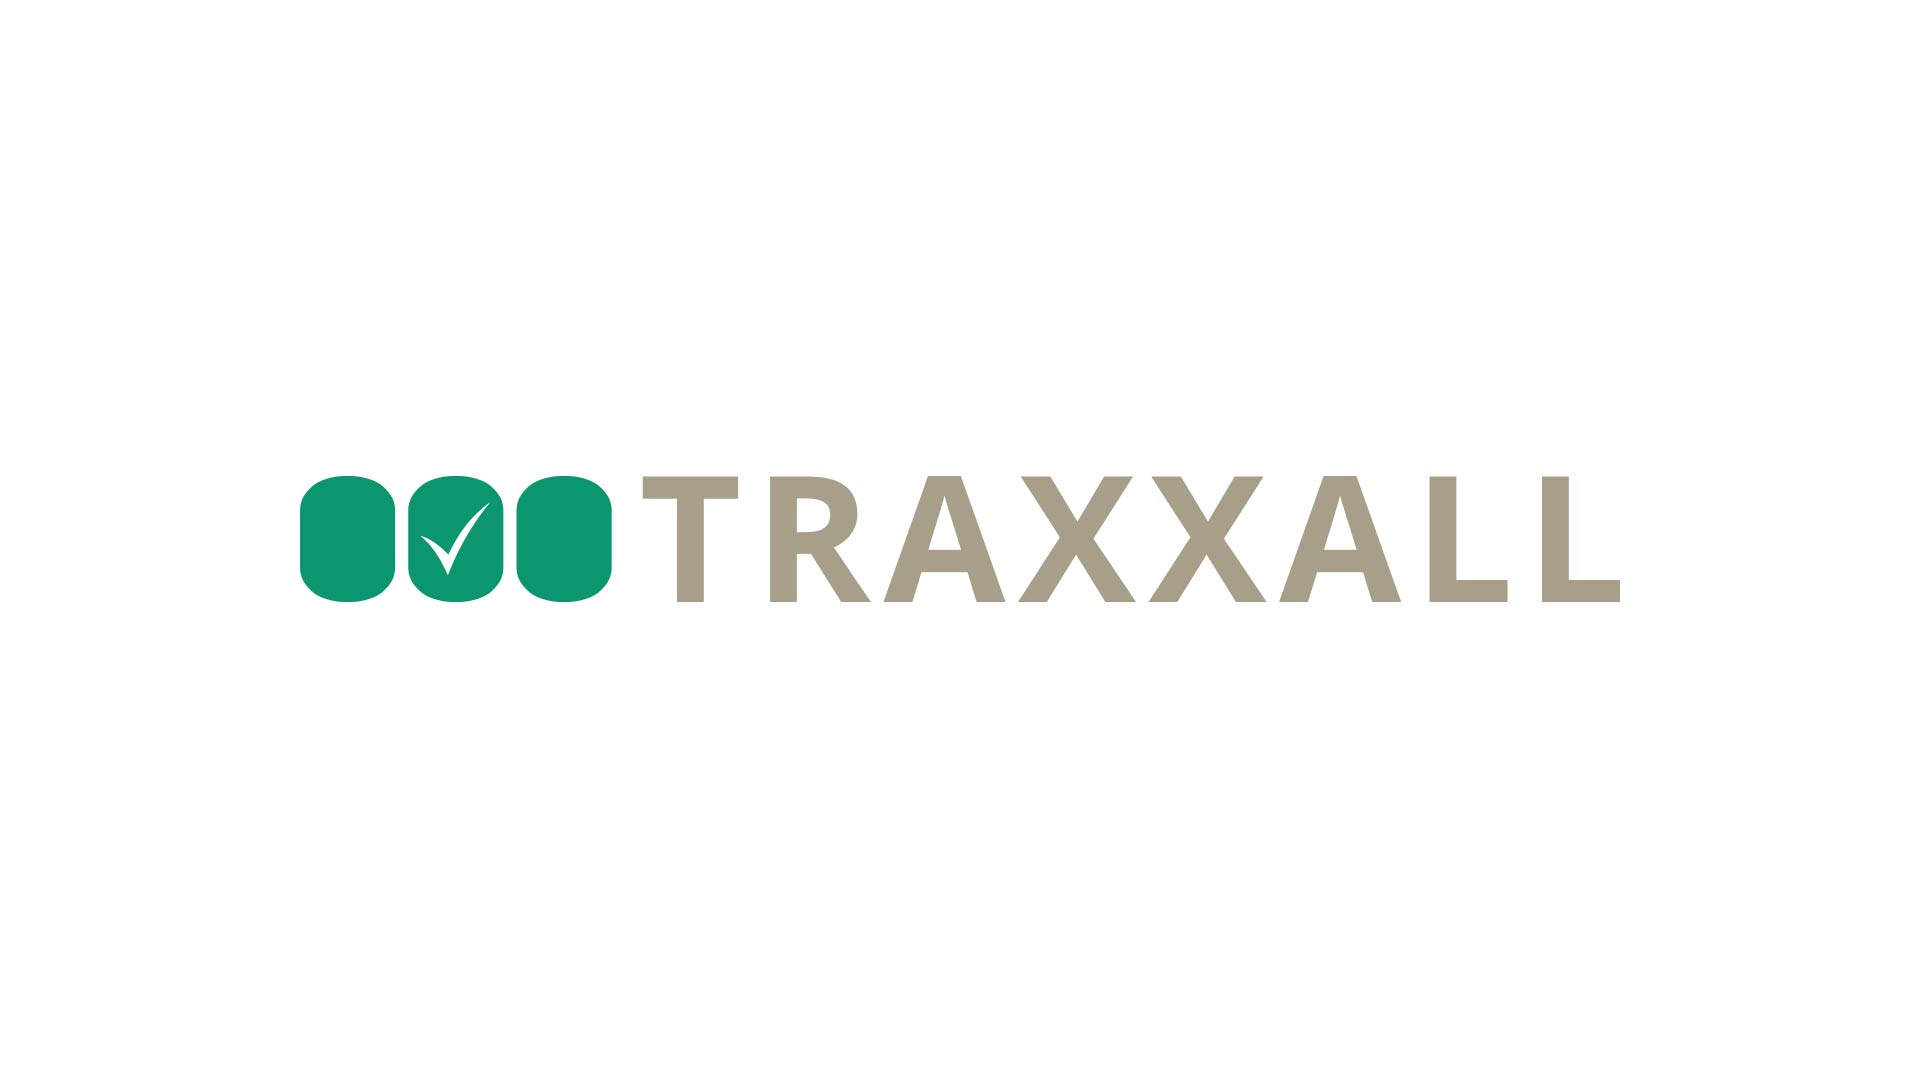 Tvorba loga - logo Traxxall